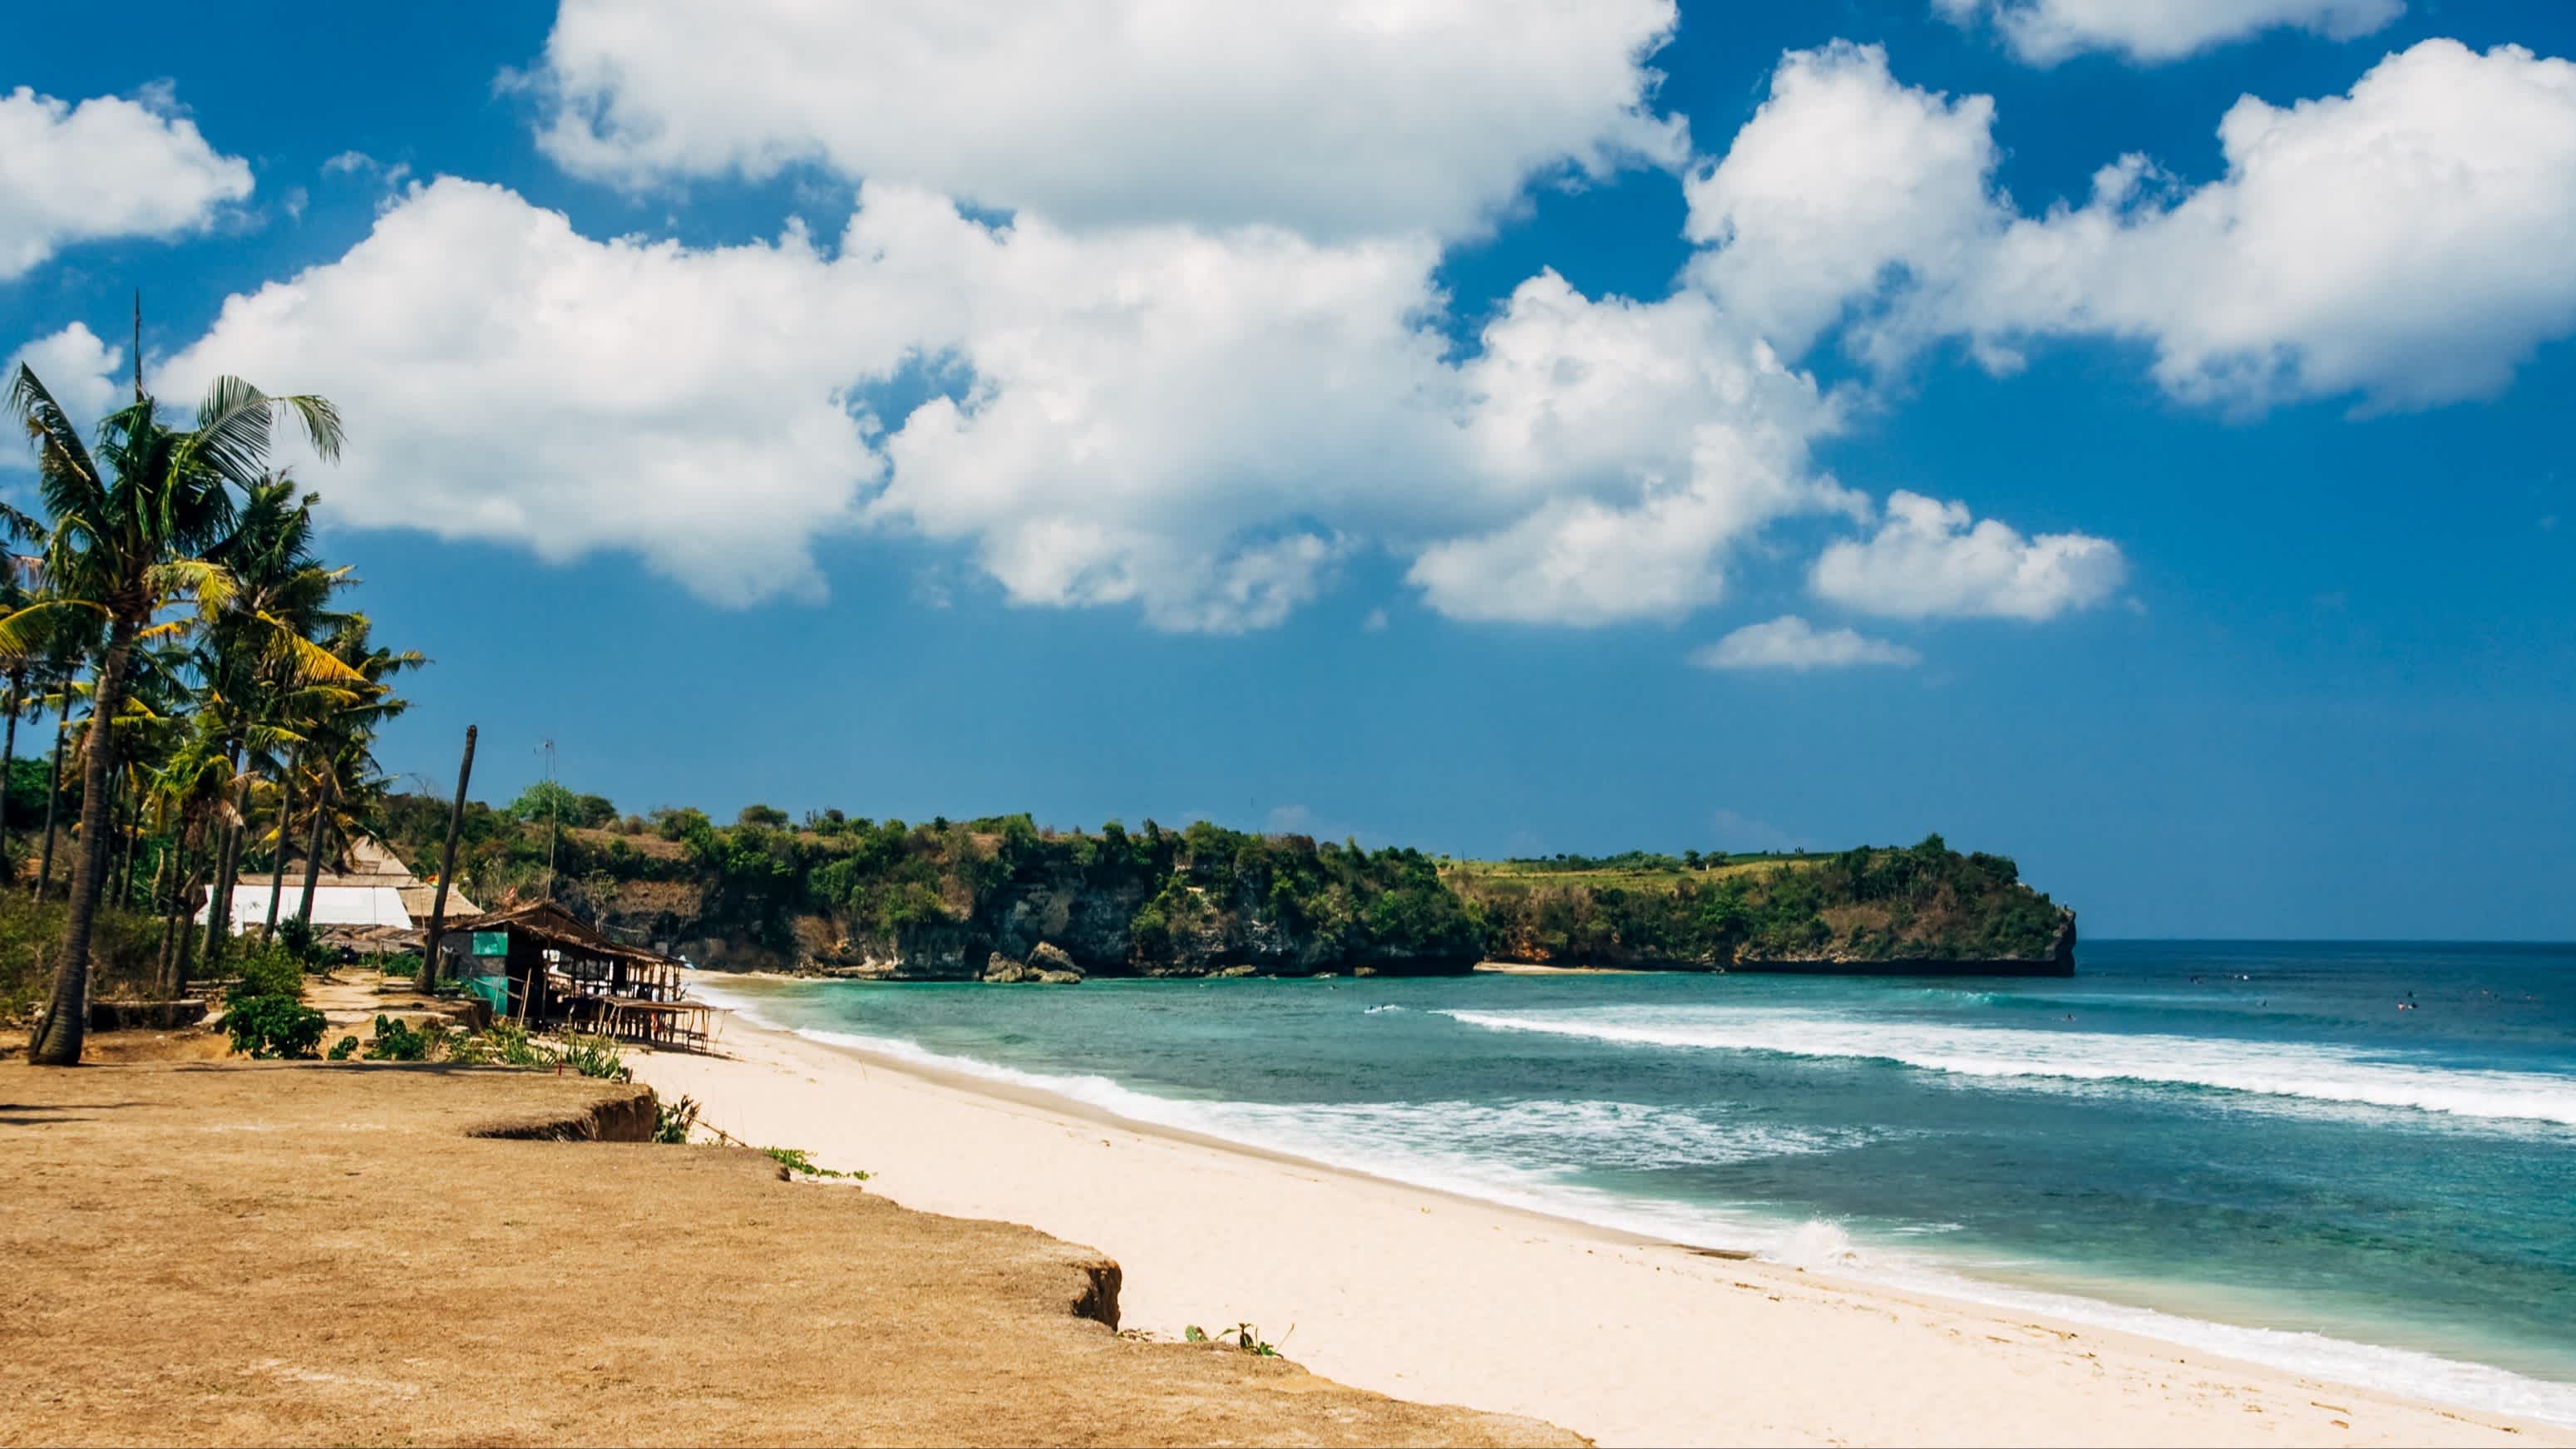 Aufnahme der Klippen des Balangan Beach auf Bali, Indonesien bei Sonnenschein und mit Blick auf das blaue Meer.